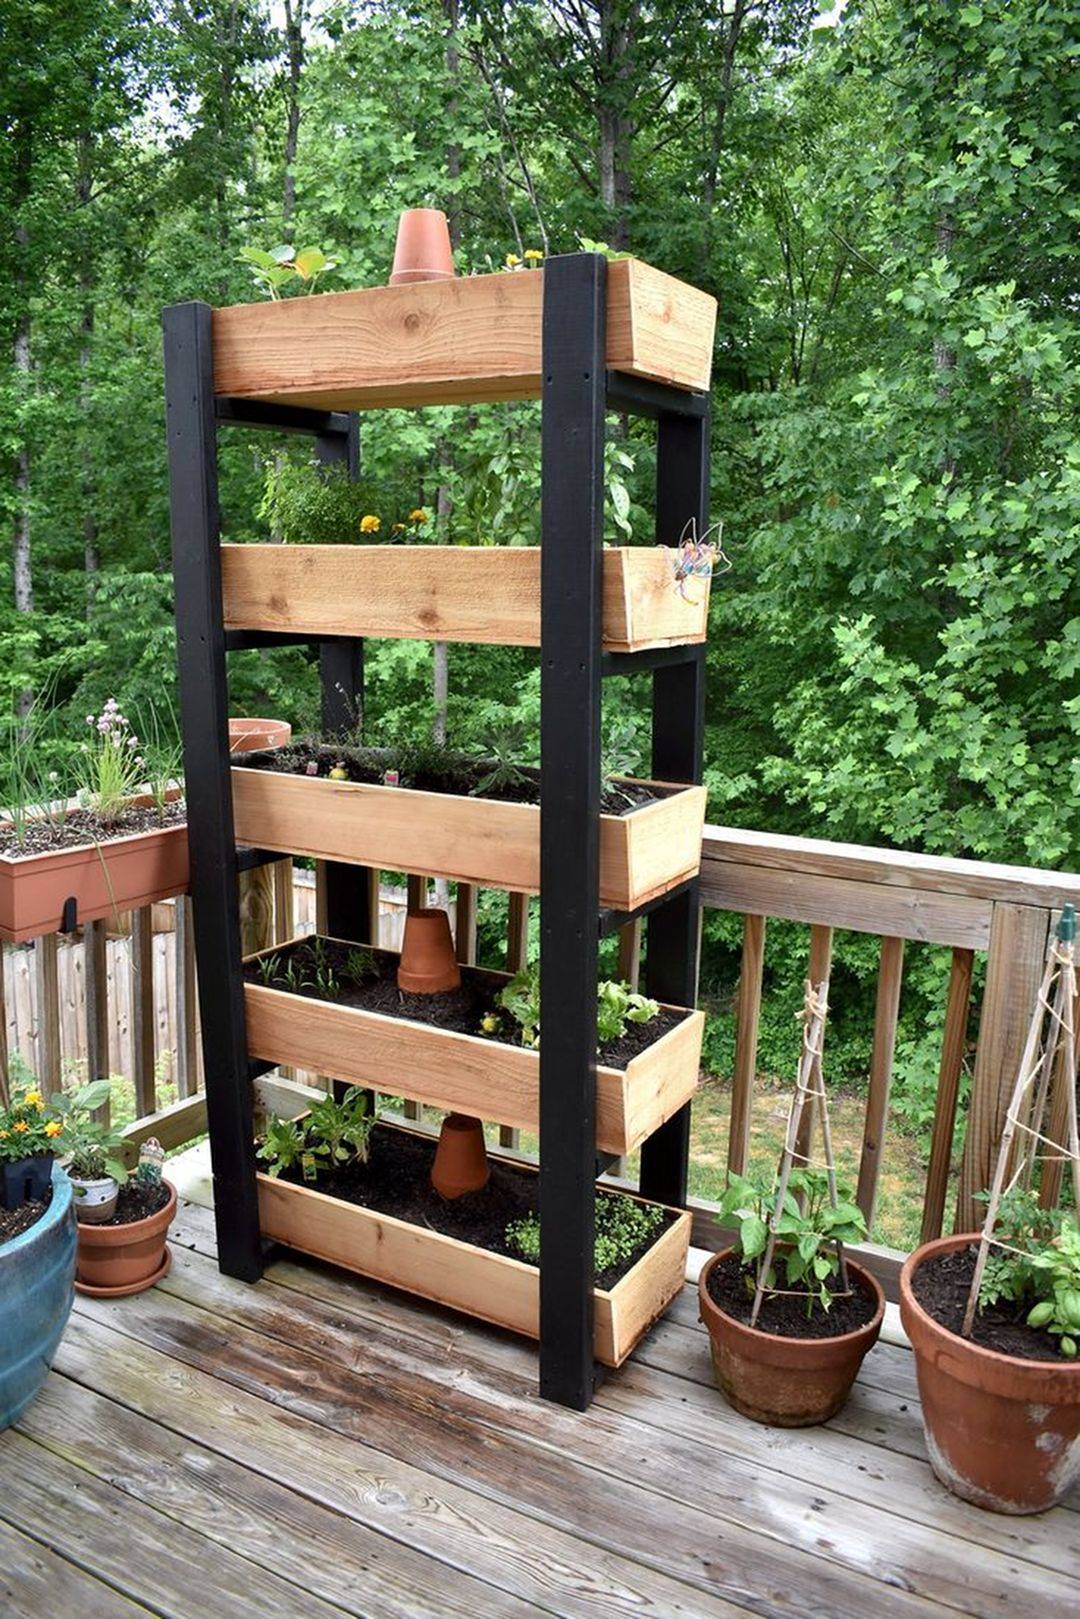 Small Vertical Vegetable Garden Lettuce Herbs Creative Garden Ideas